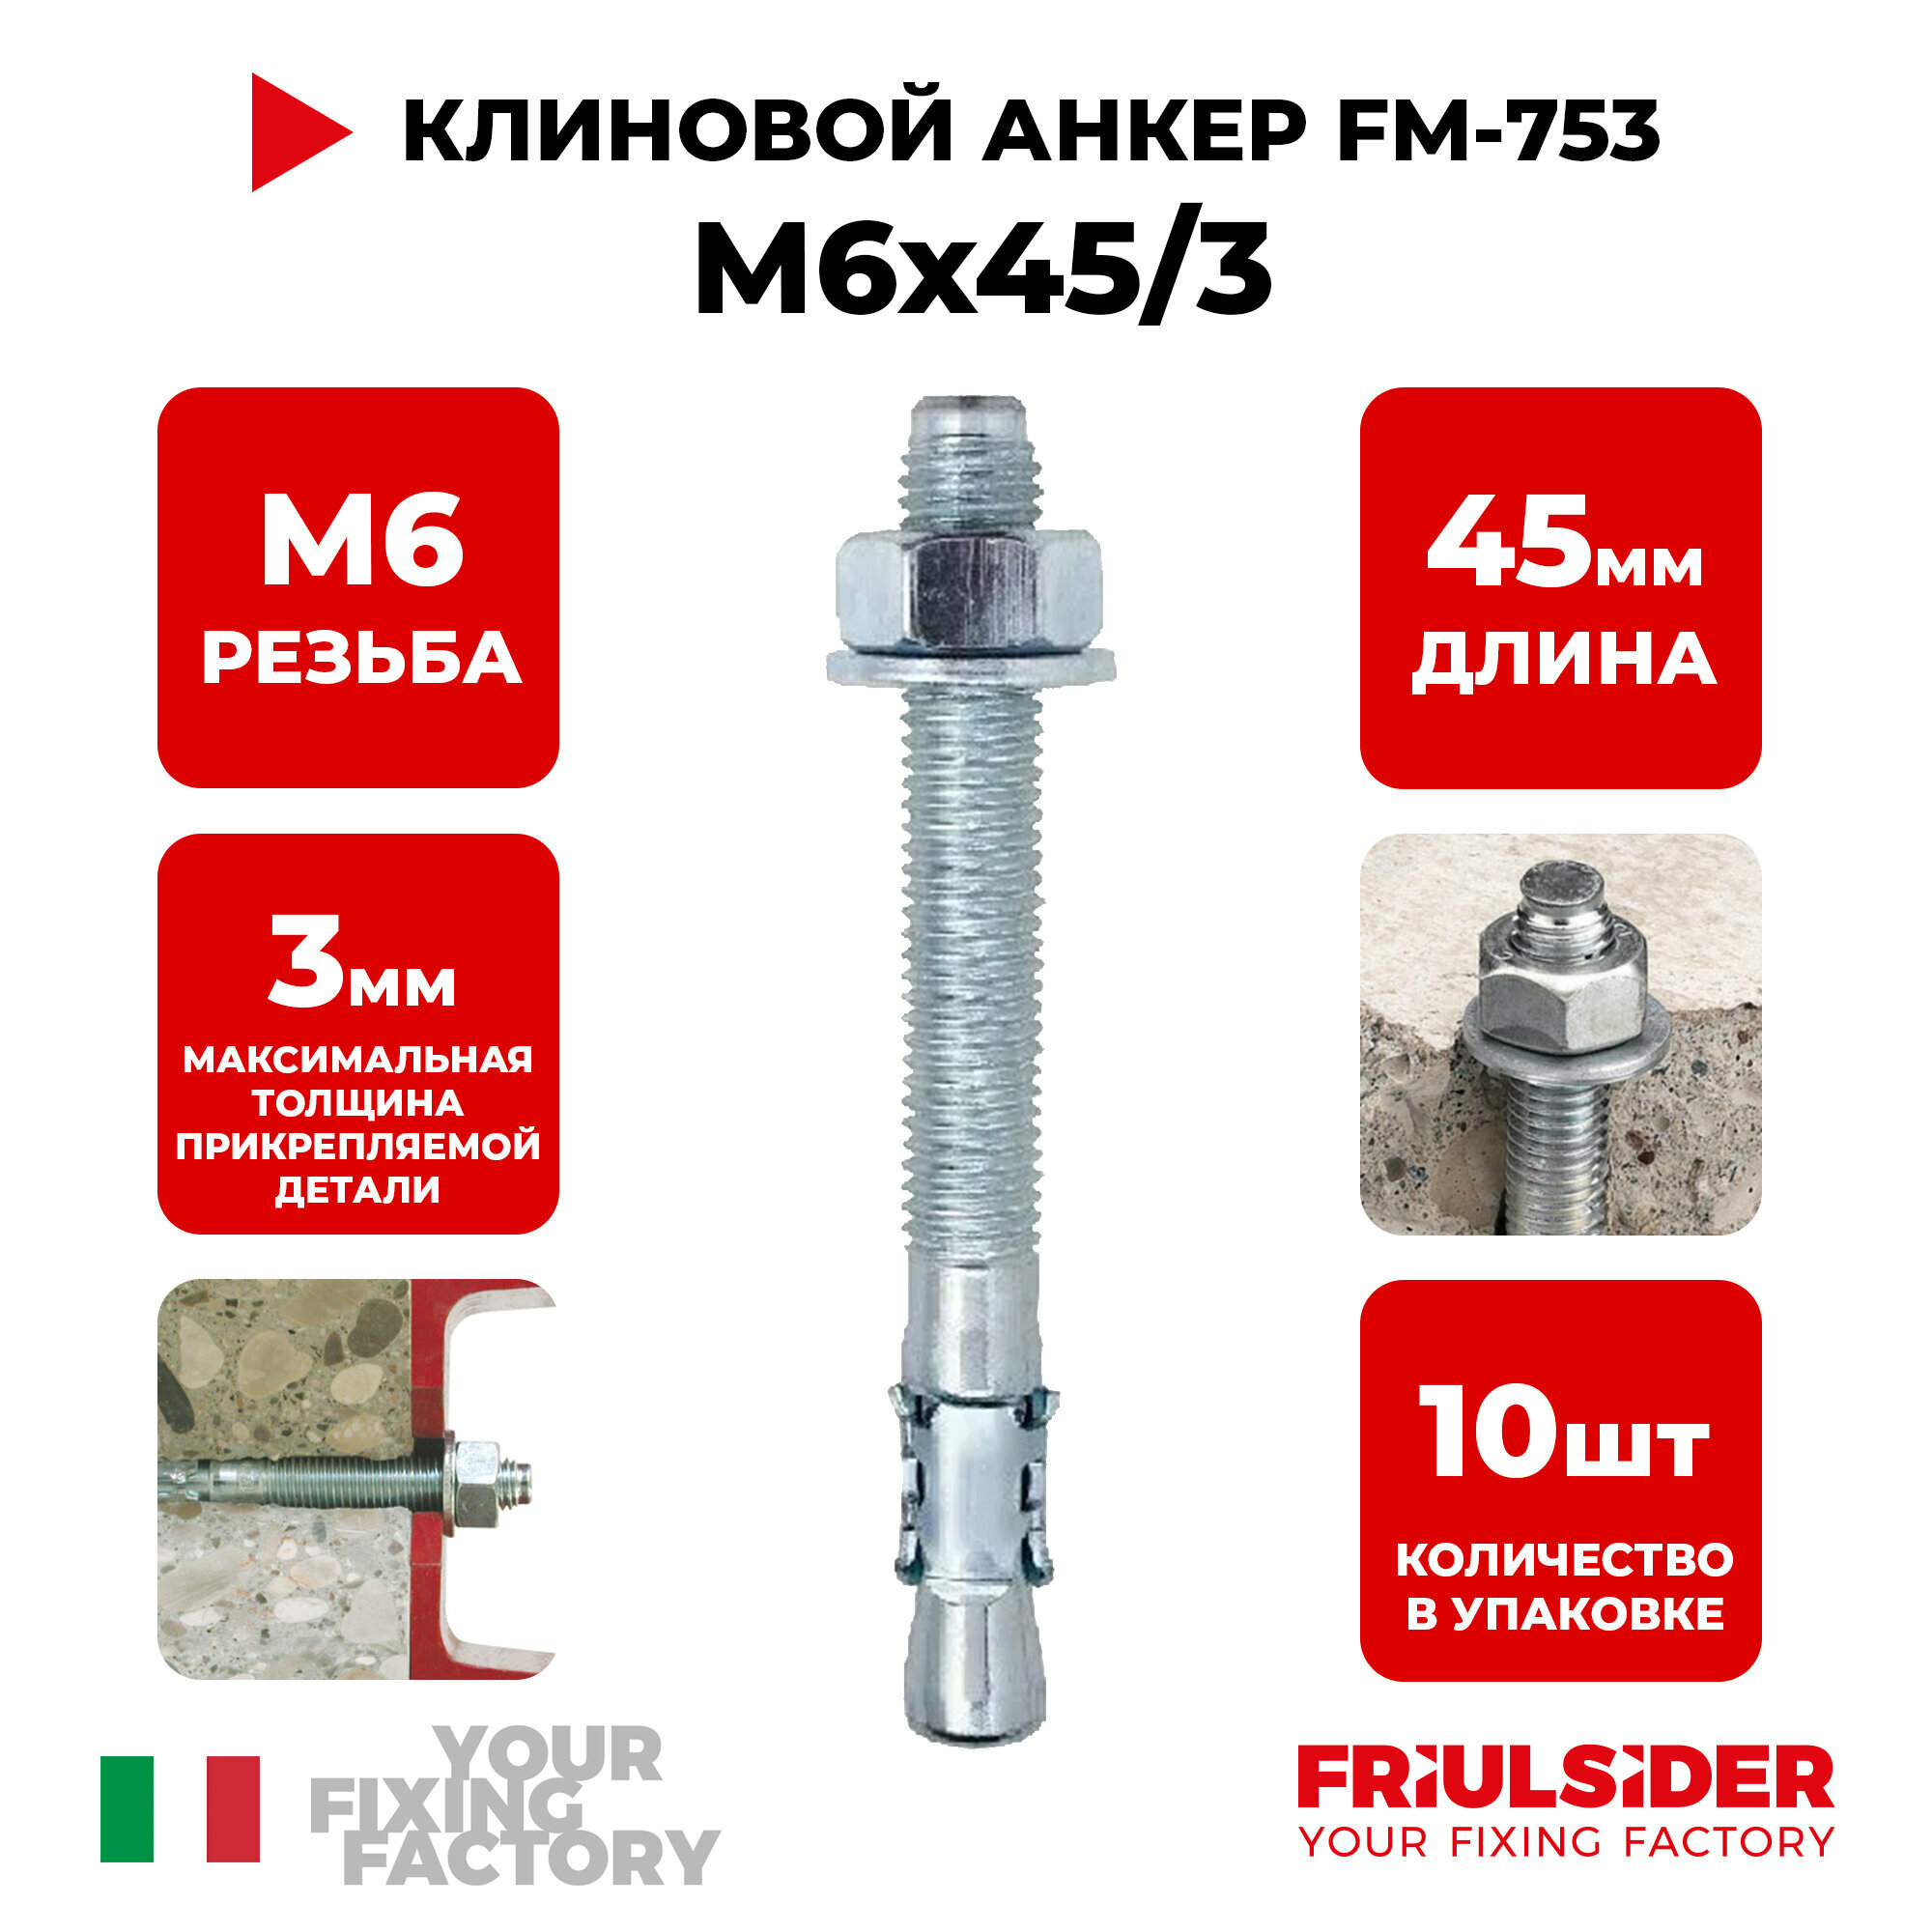 Анкер клиновой FM753 M6x45/3 (2 шт)